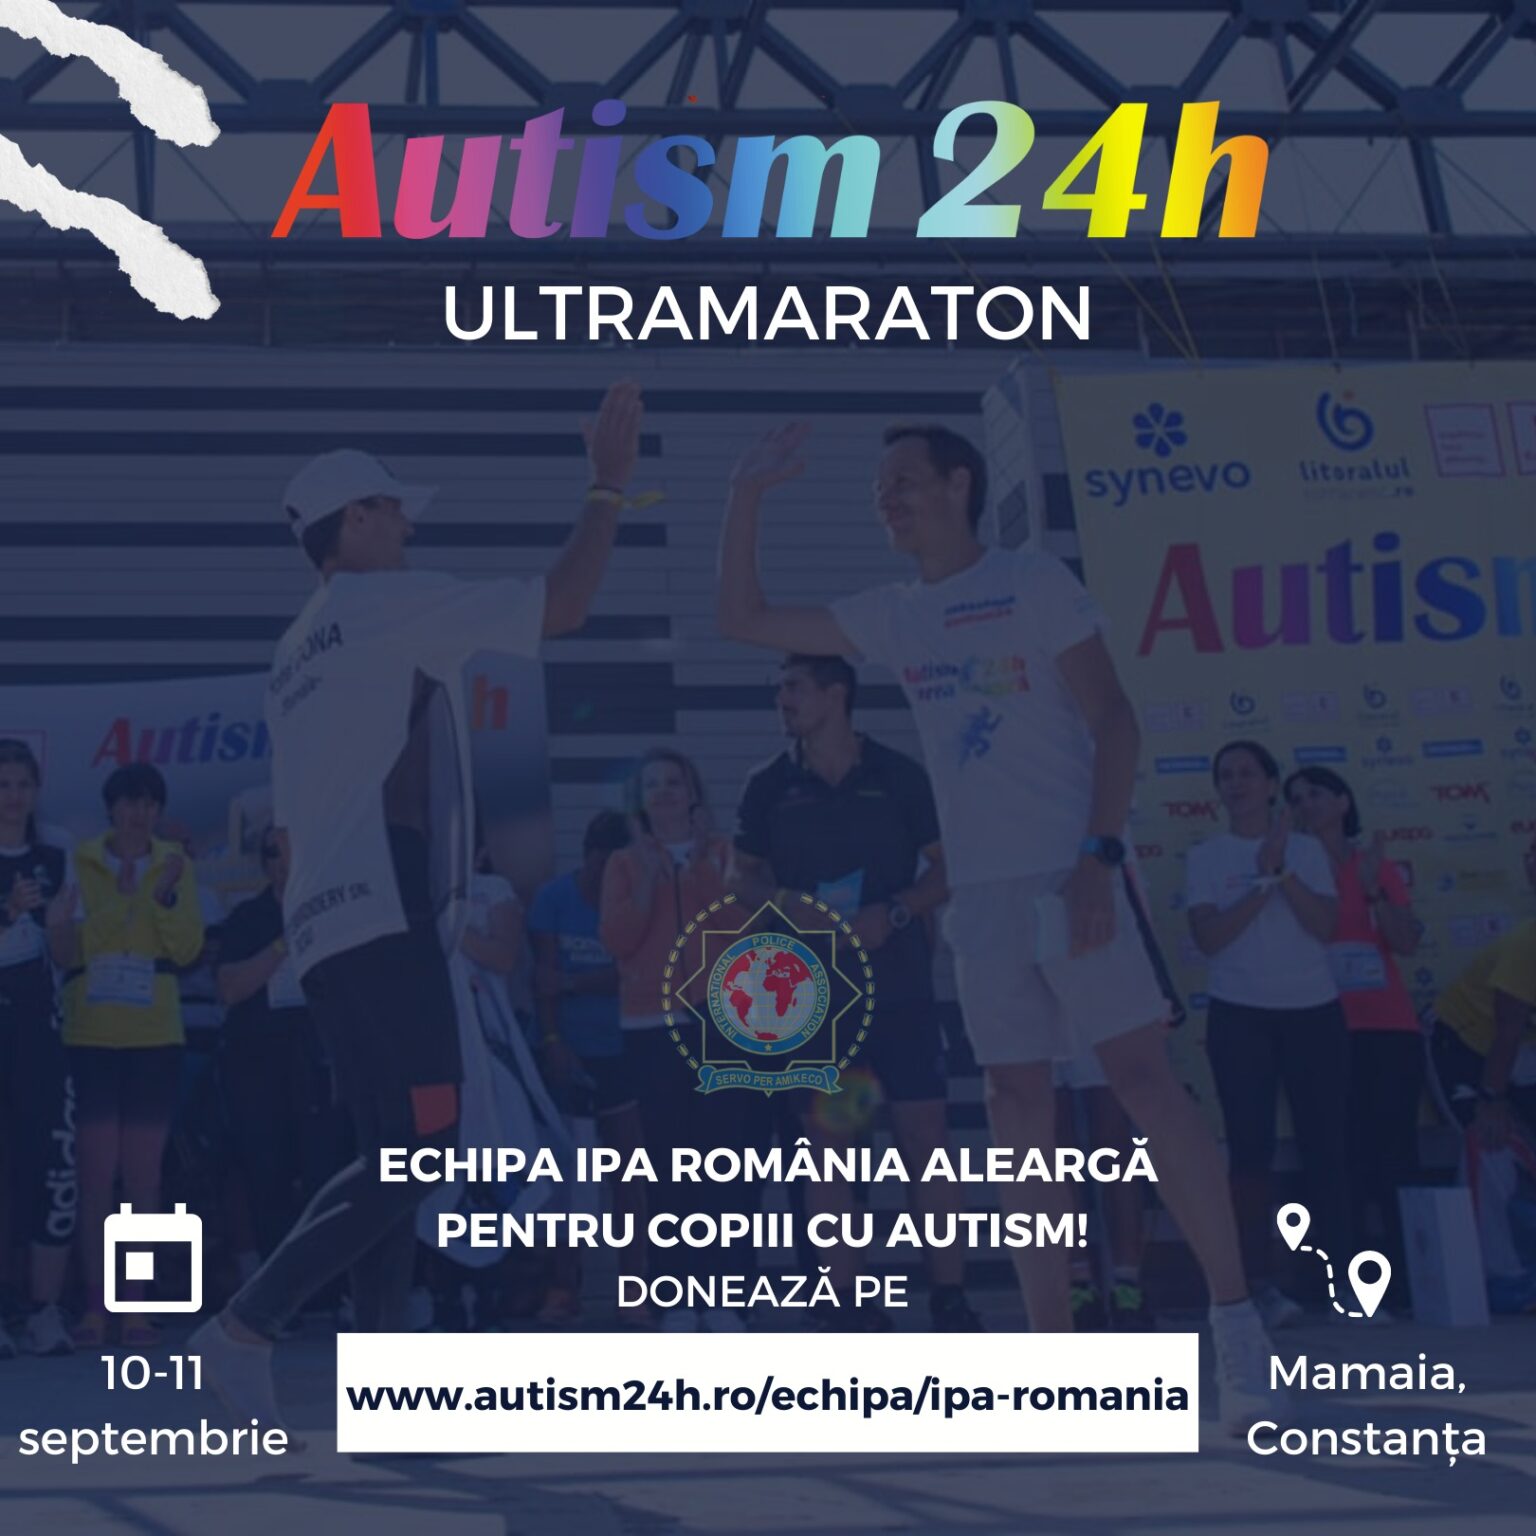 Echipa IPA Romania participă la ultramaratonul #AUTISM24H